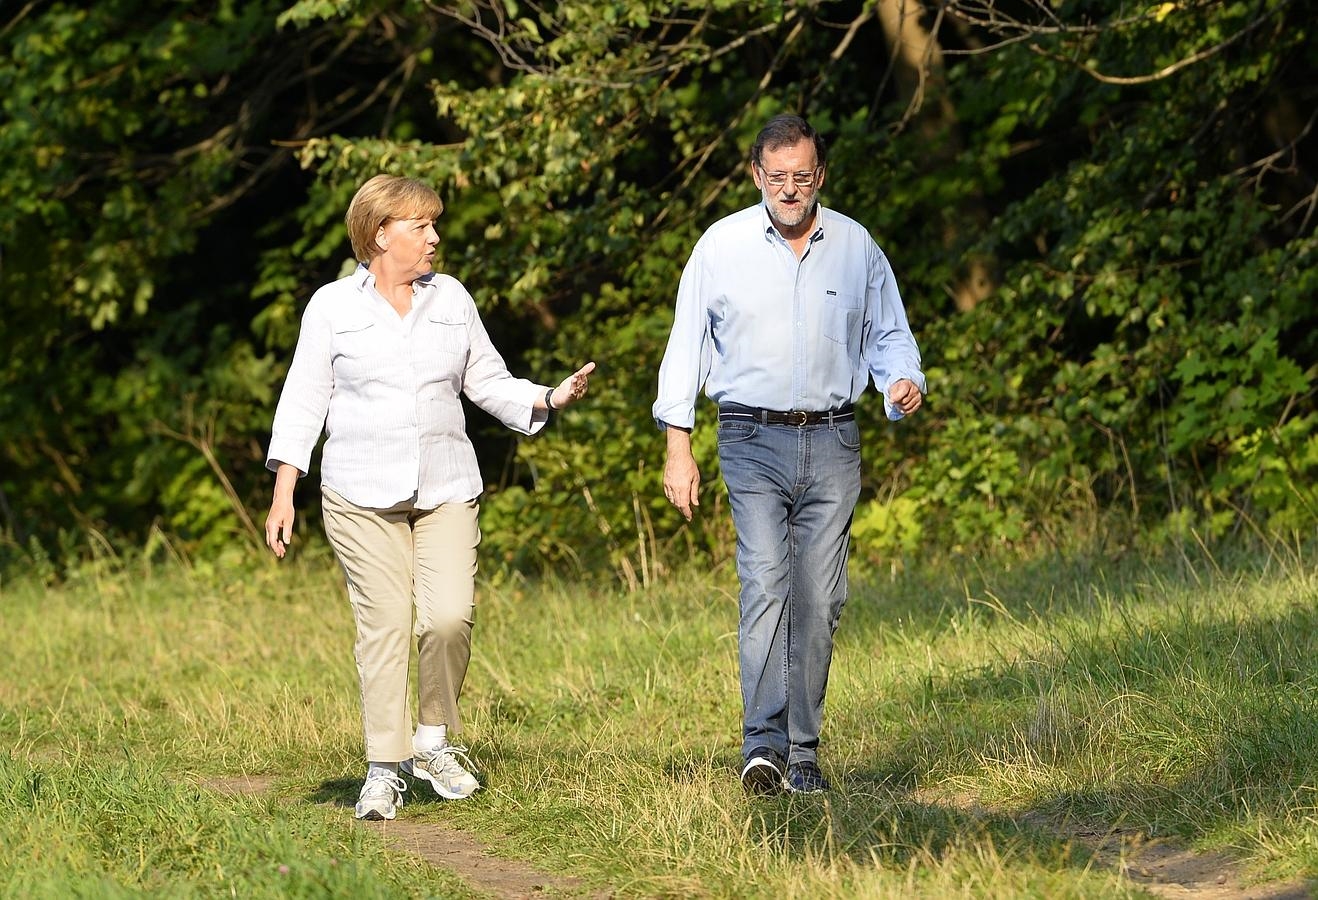 Merkel y Rajoy han charlado de forma distendida por los jardines del castillo de Meseberg